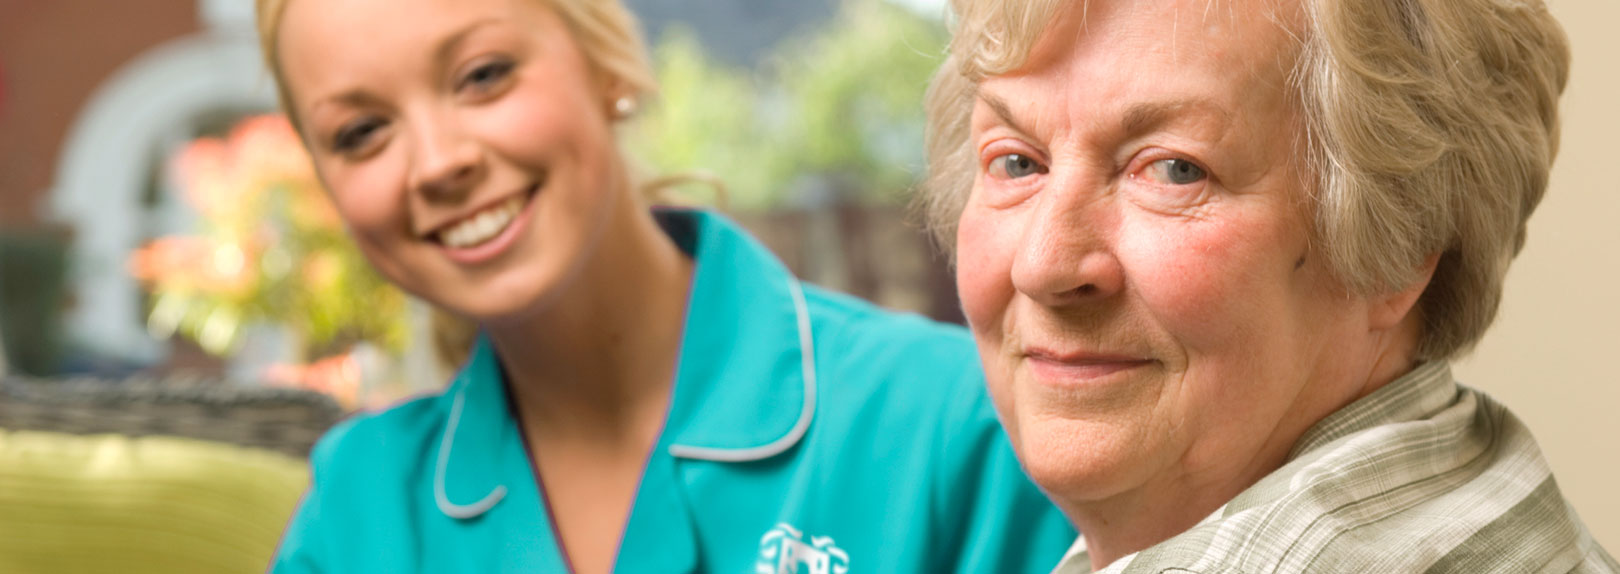 Glenavon Care | Specialist In-Home Care | Respite Care